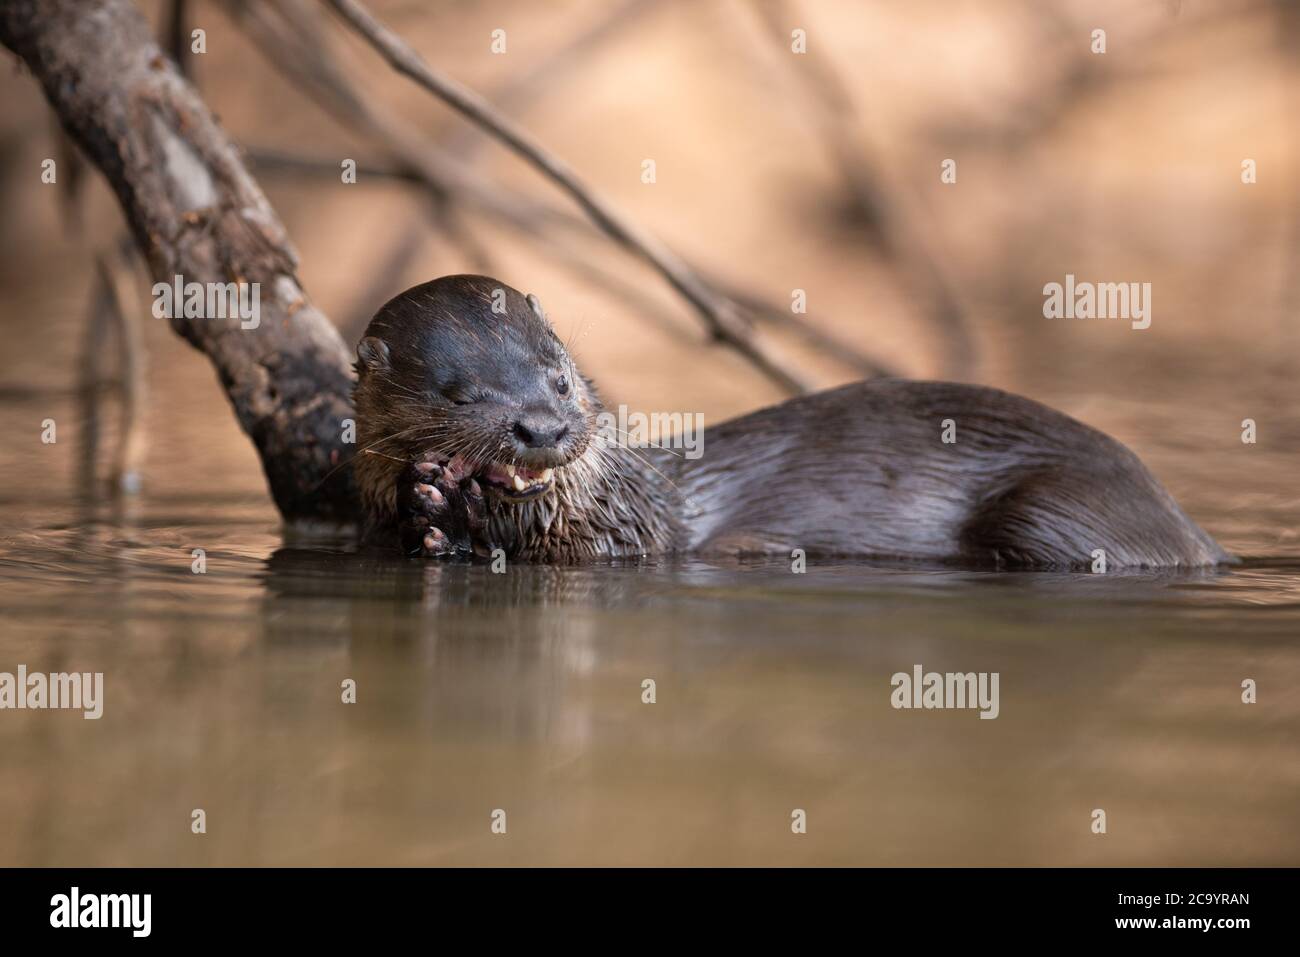 Un Otter néotropical (Lontra longicaudis) se nourrissant d'un petit poisson du Pantanal du Sud, au Brésil Banque D'Images